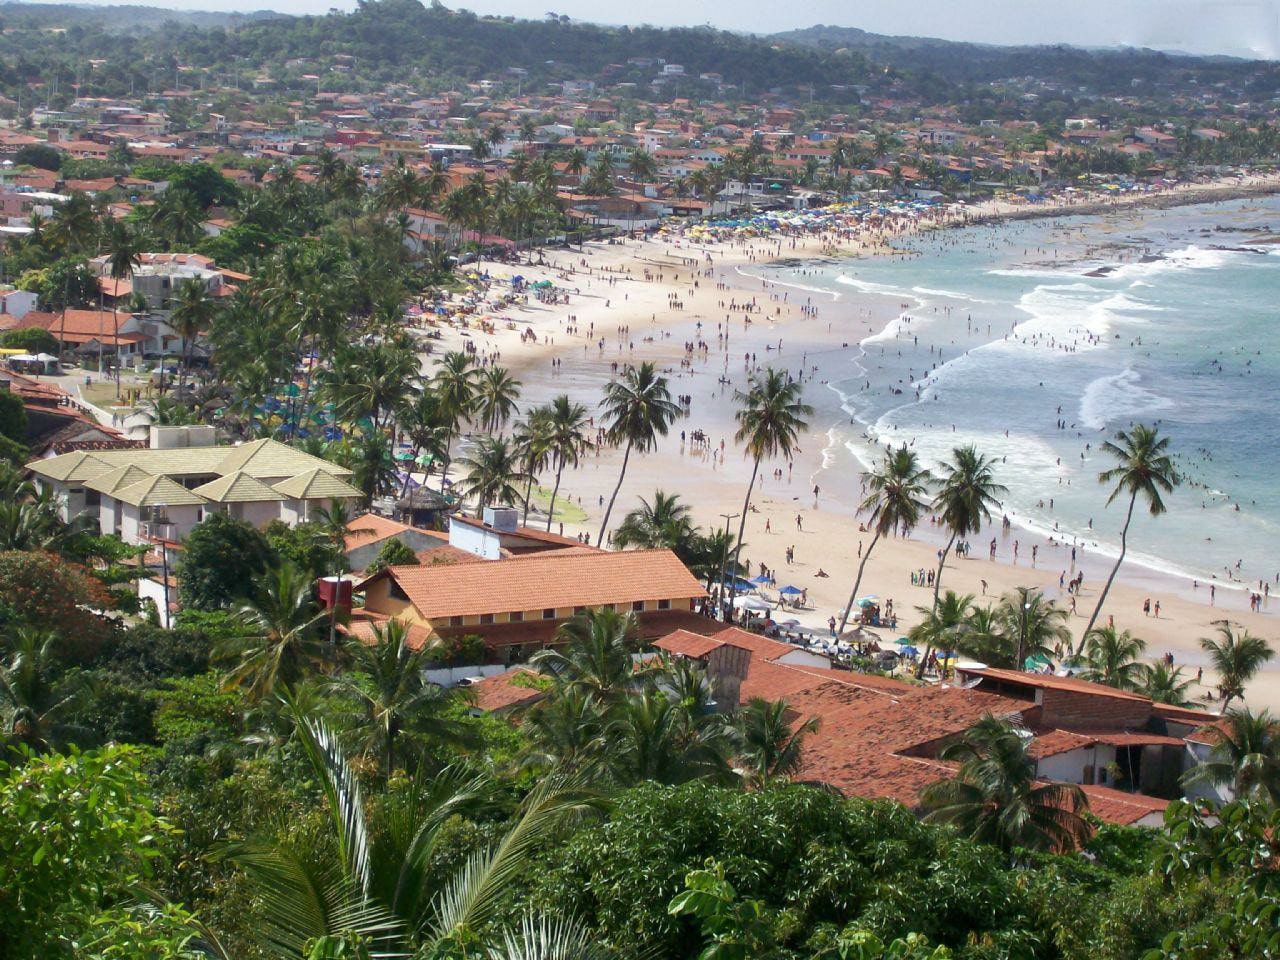 O Departamento Estadual de Trânsito de Pernambuco está presente no município de Cabo de Santo Agostinho por meio da 9ª Circunscrição Regional de Trânsito (CIRETRAN).